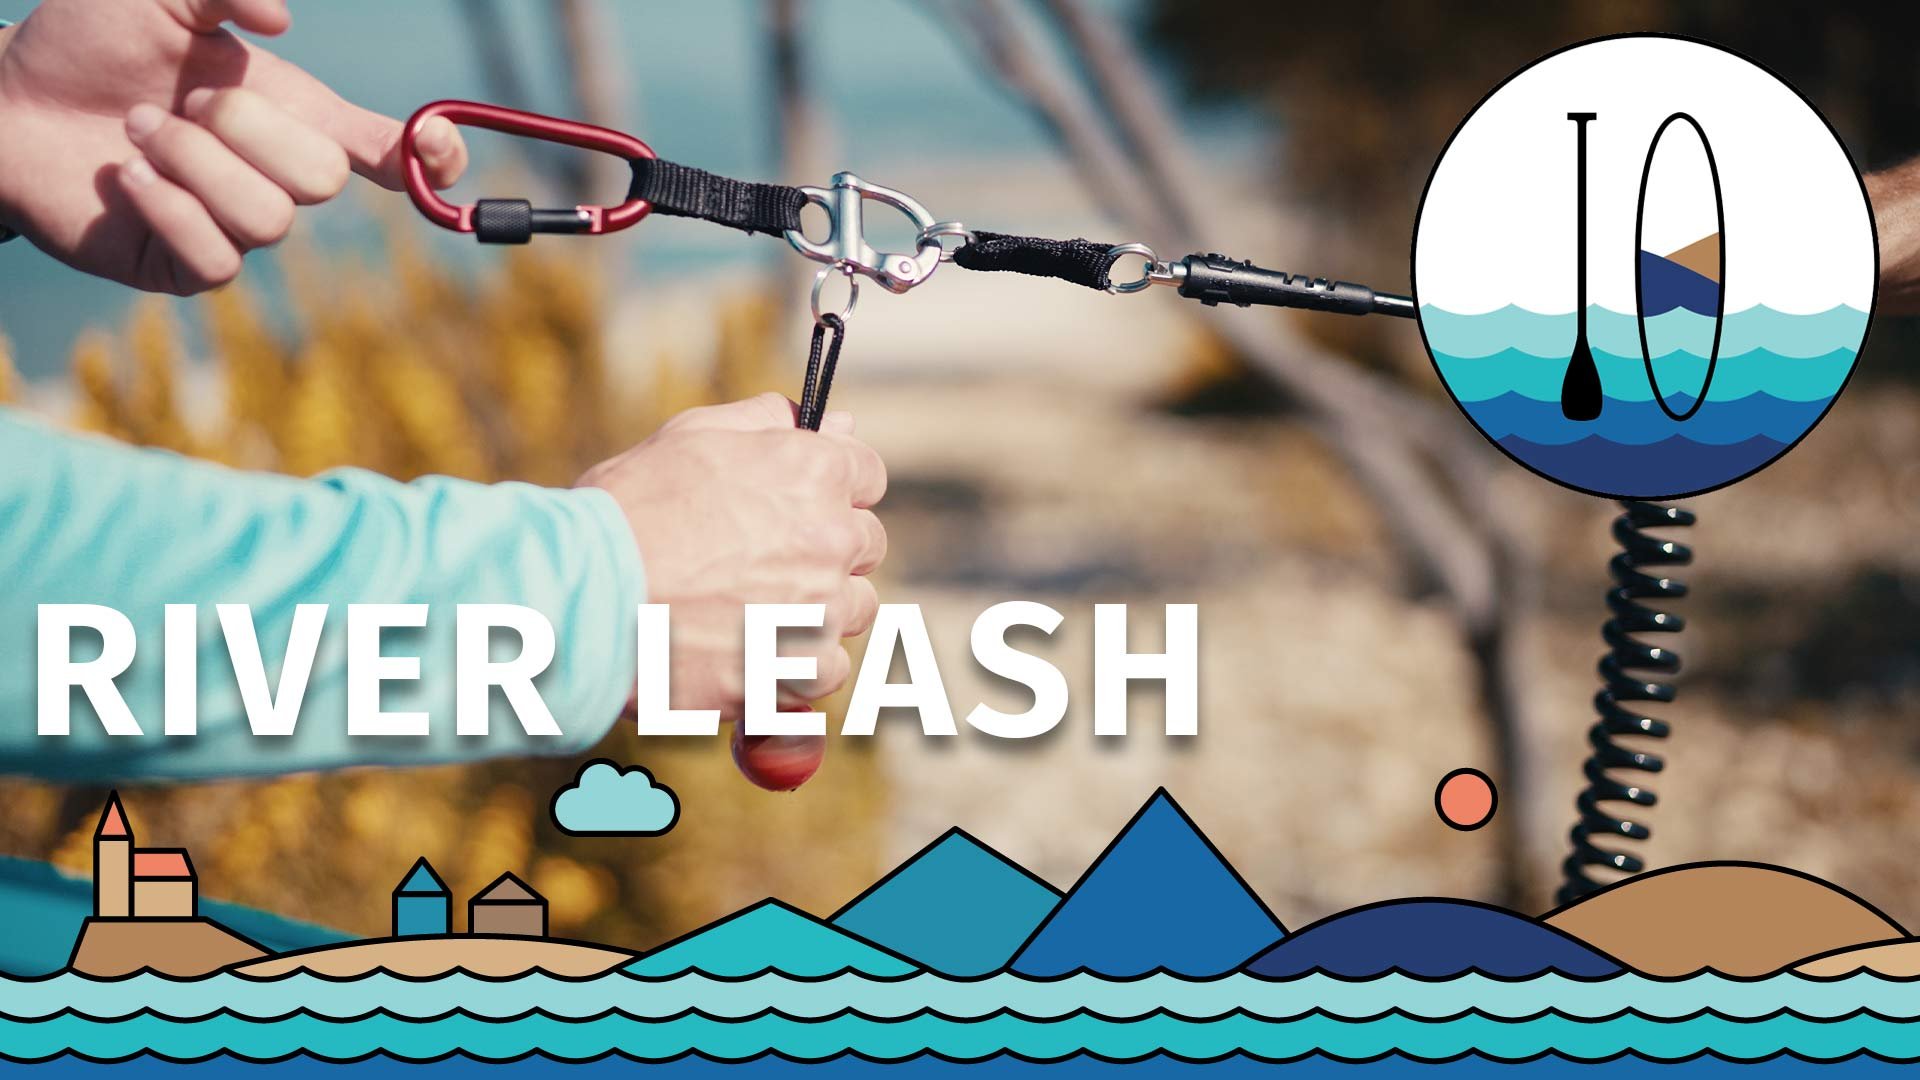 Pojistný řemínek - leash - pro bezpečnost při jízdě na tekoucí vodě